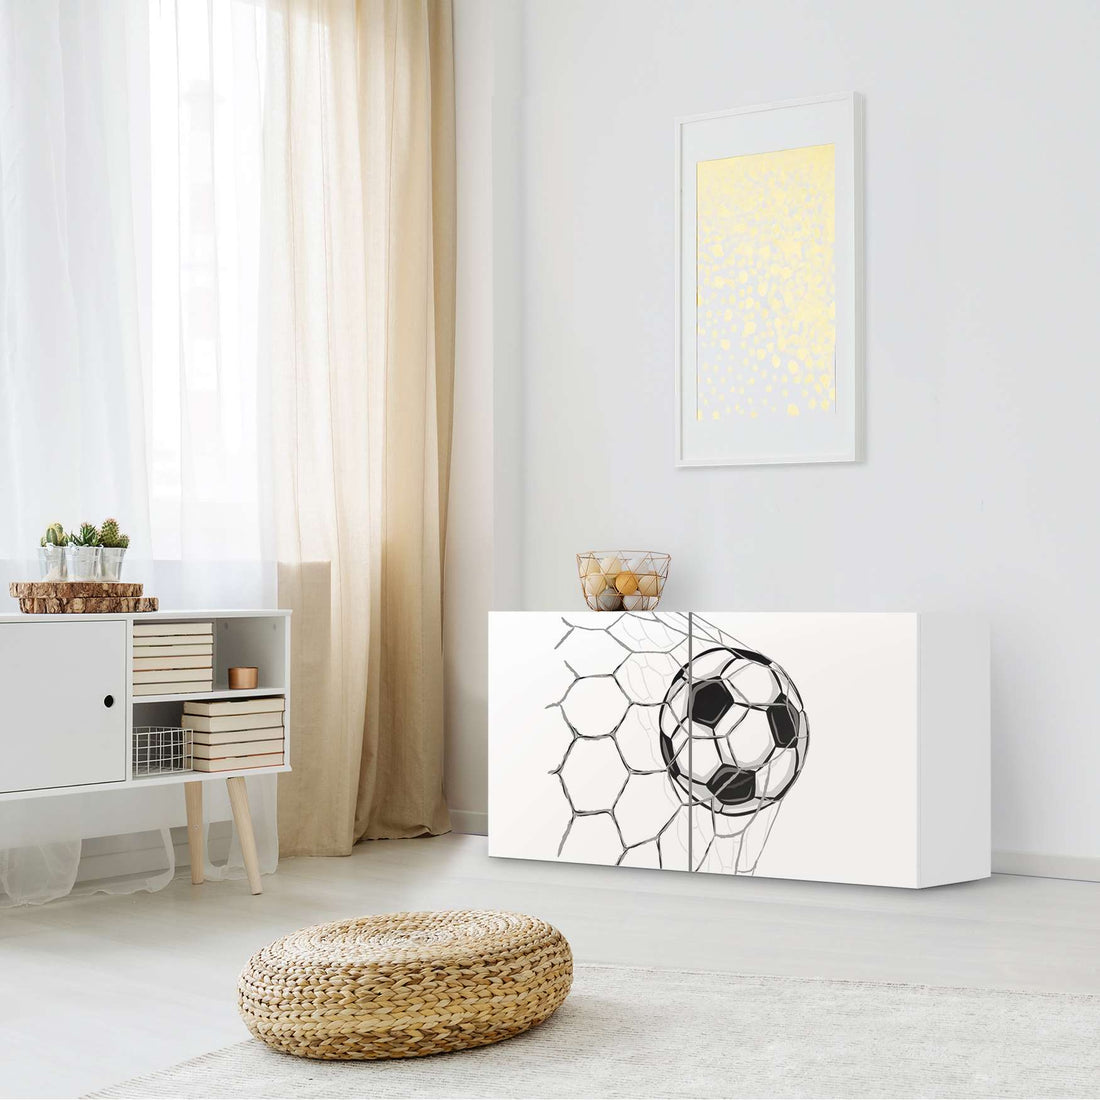 Folie für Möbel Eingenetzt - IKEA Besta Regal Quer 2 Türen - Kinderzimmer